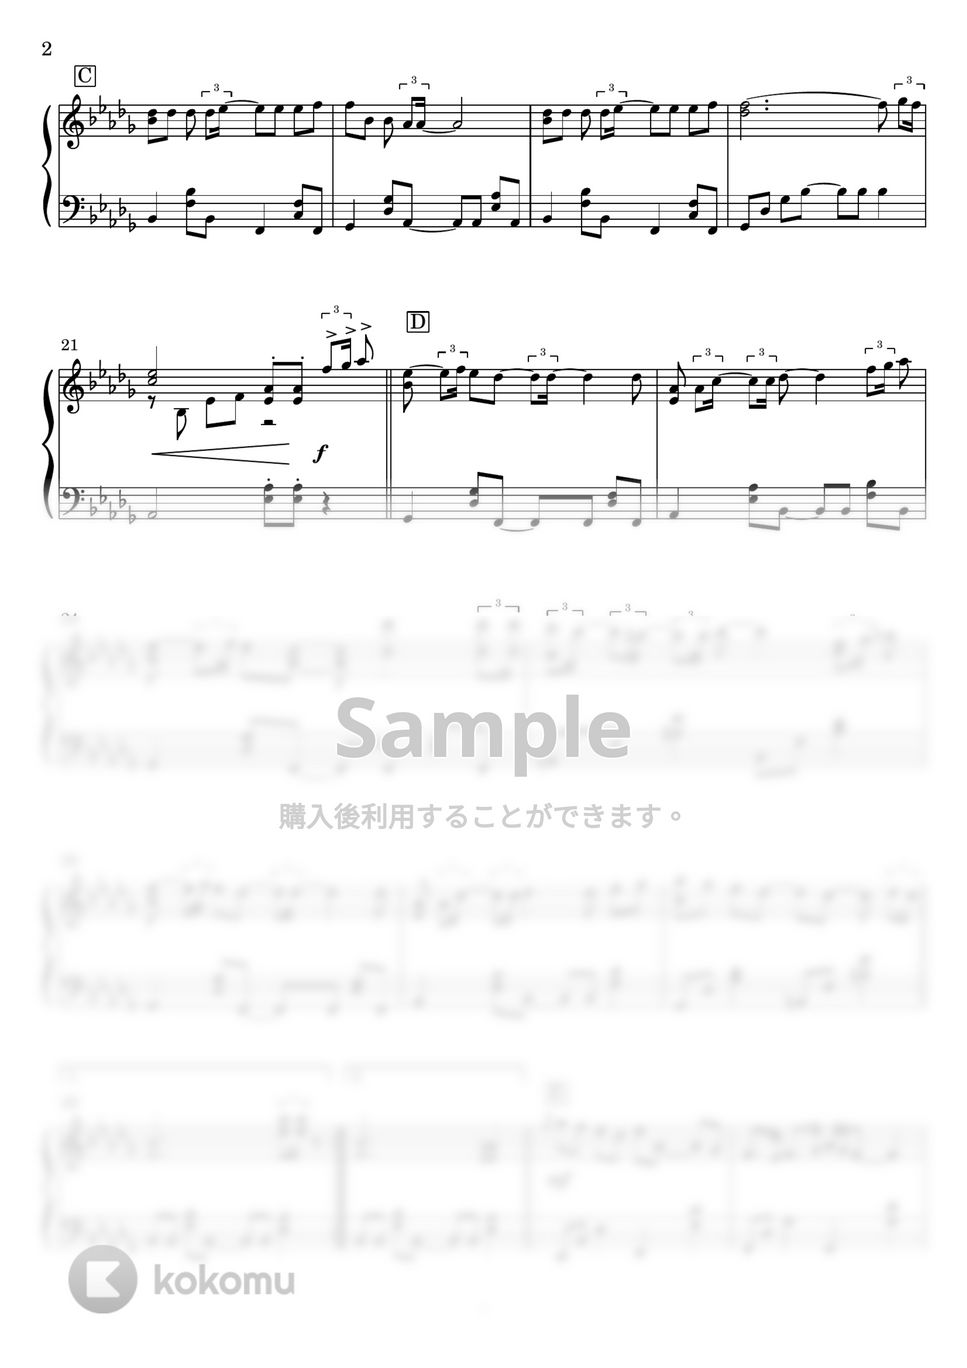 スピッツ - 美しい鰭(フルver.) (ピアノソロ) by Miz